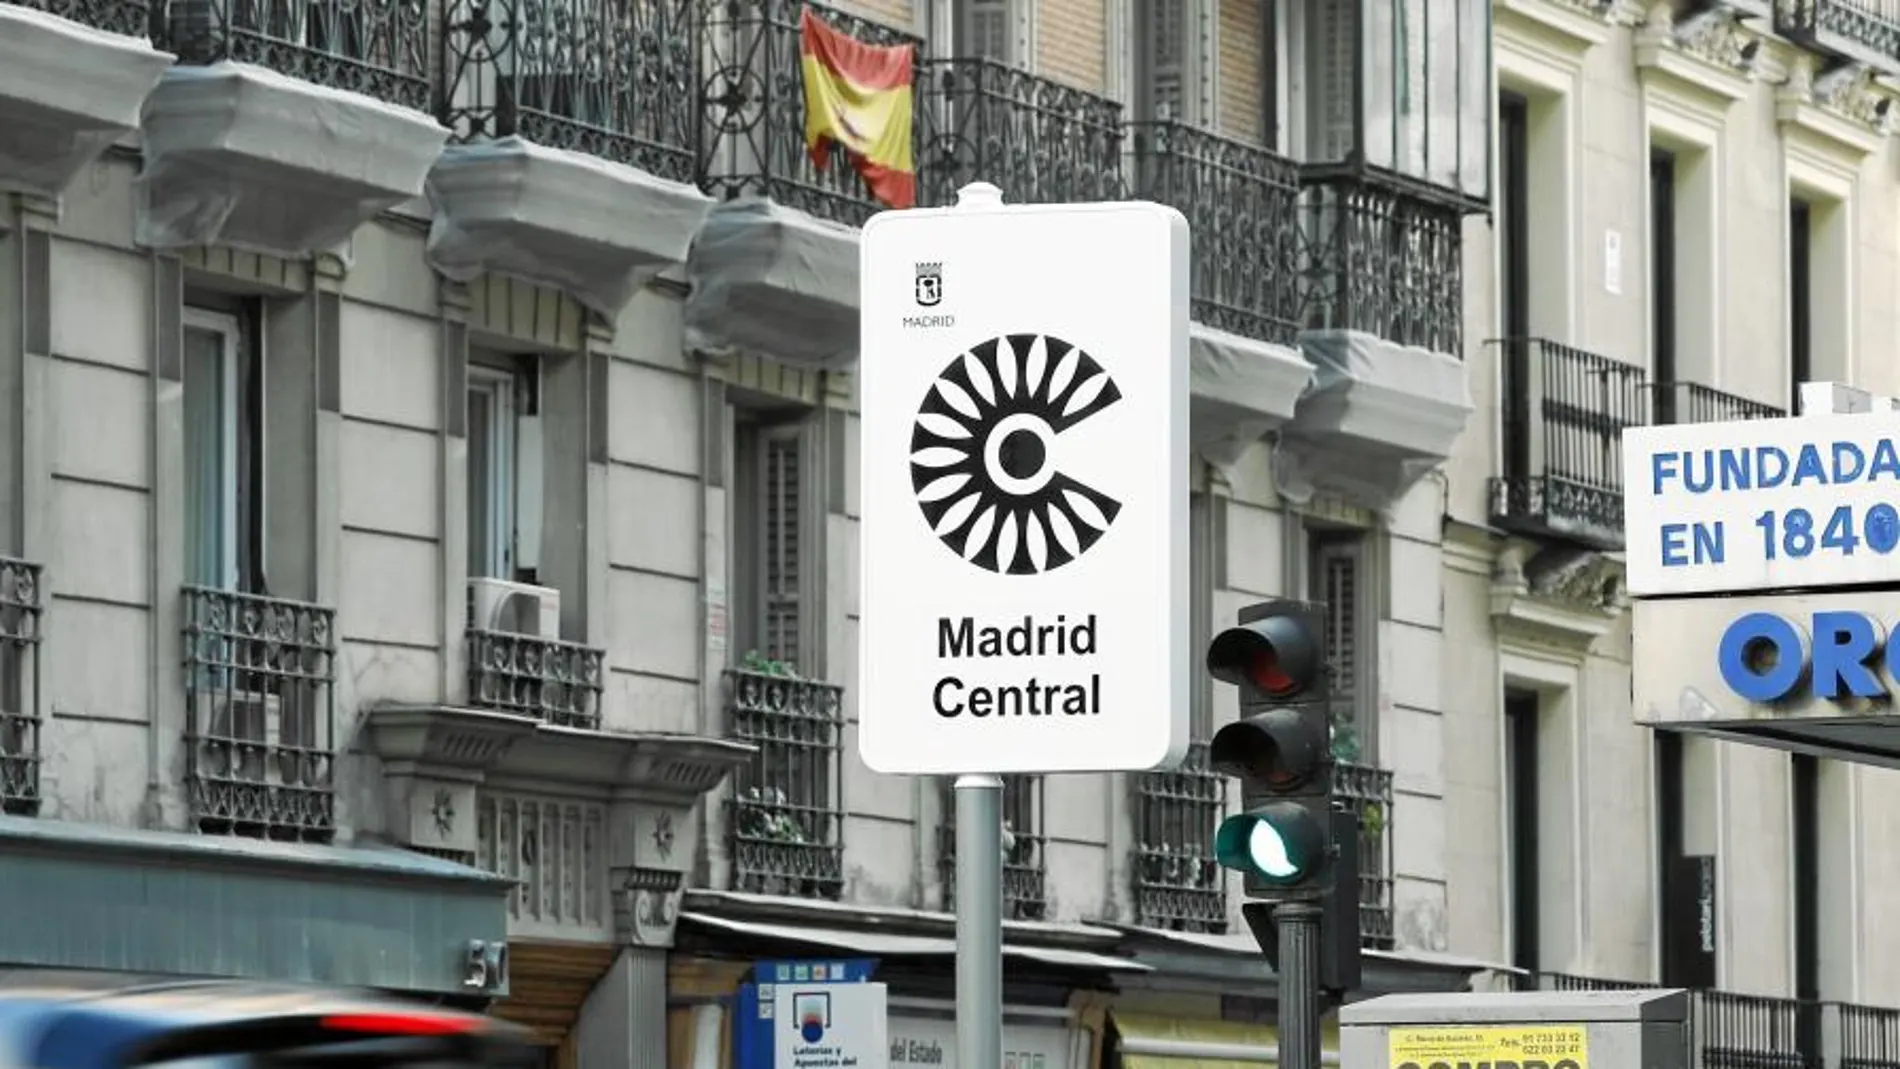 El 23 de noviembre entra en vigor la normativa que prohíbe aparcar y circular a los coches y motos contaminantes en Madrid Central